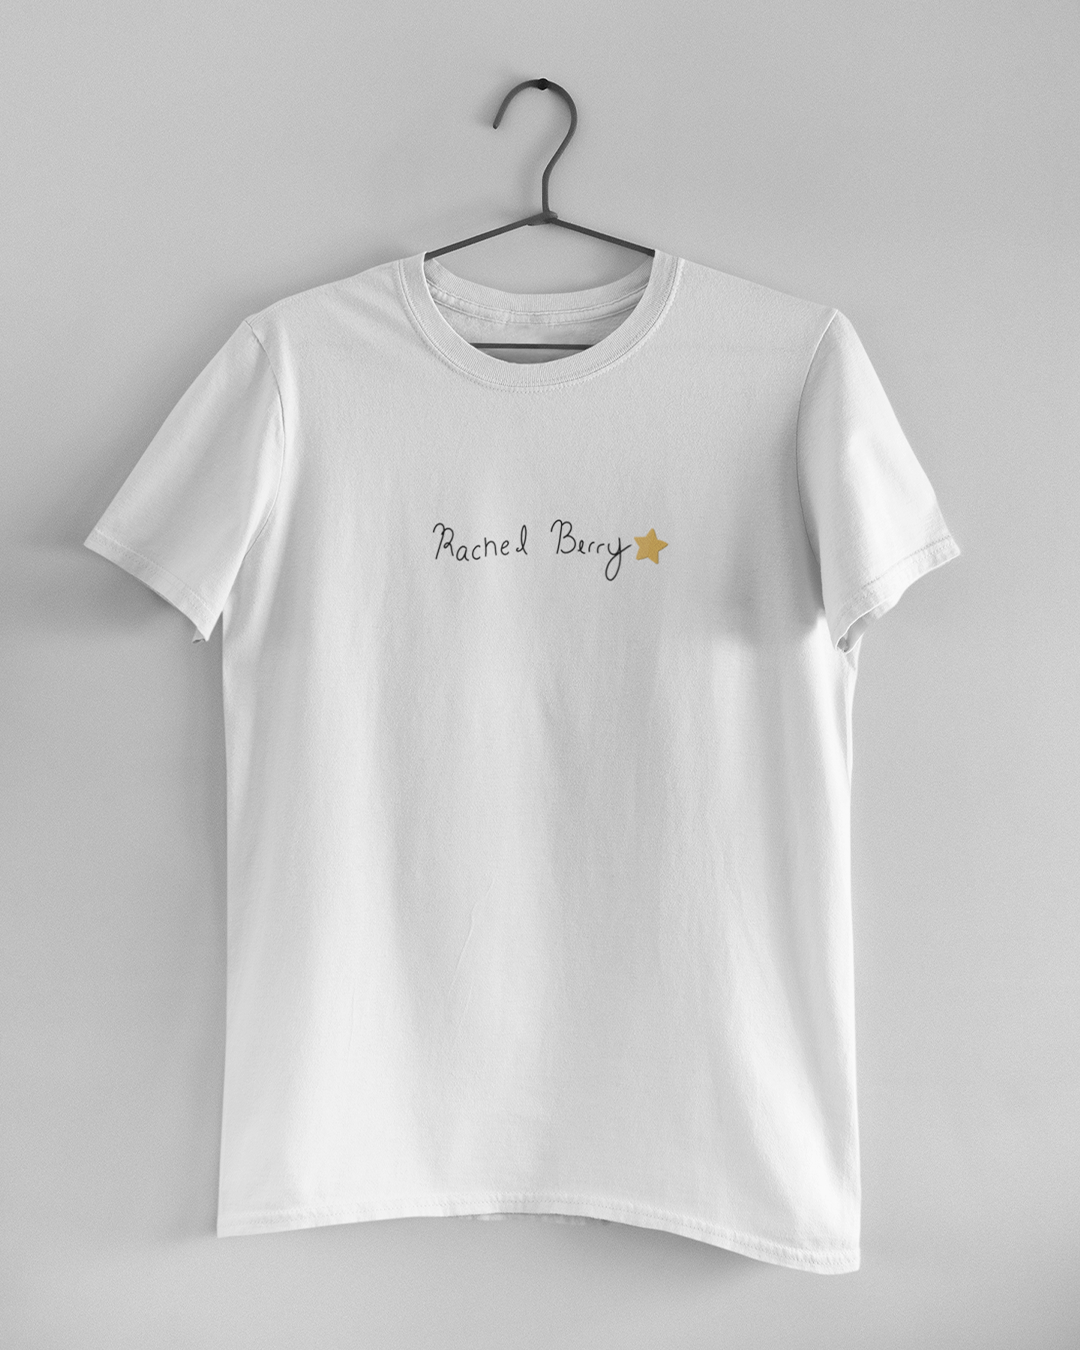 Rachel Berry Gold Star T-Shirt - Glee Inspired T-Shirt - Rachel Berry Handwriting T-Shirt - Glee Inspired T-Shirt